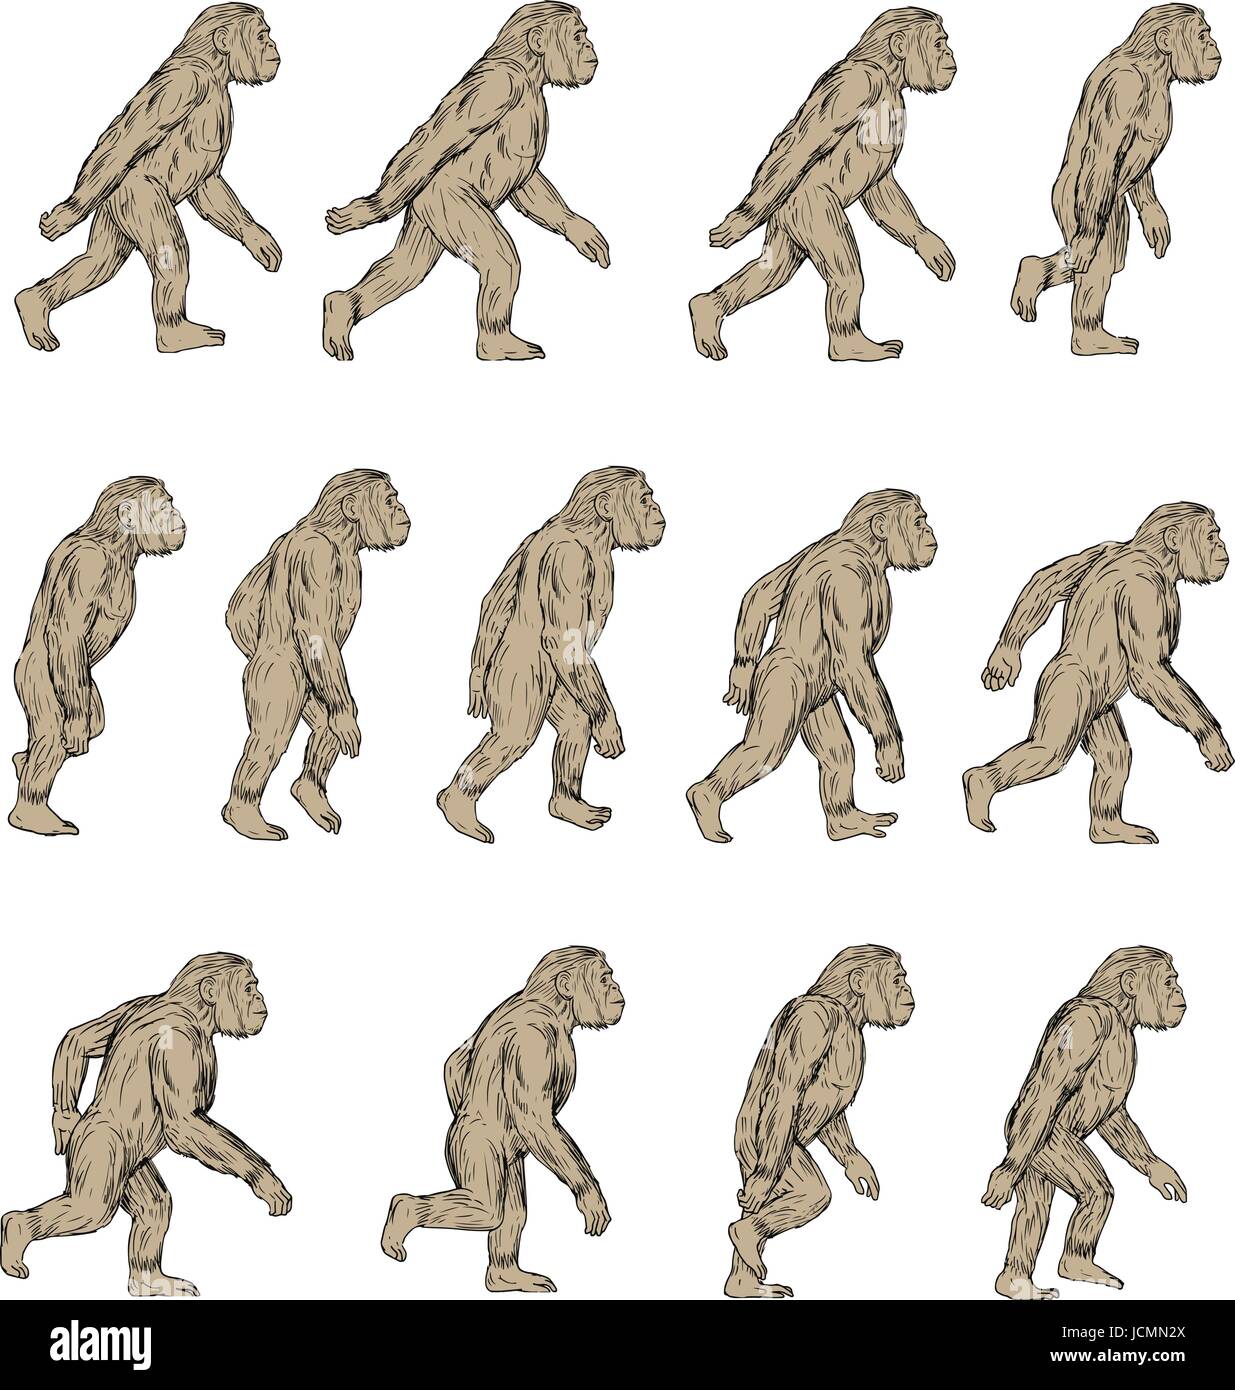 Sammlung von Abbildungen von Homo habilis, einer Art des Stammes hominini, während der gelasian und frühen kalabresischen Bühnen des Pleistozäns pe Stock Vektor